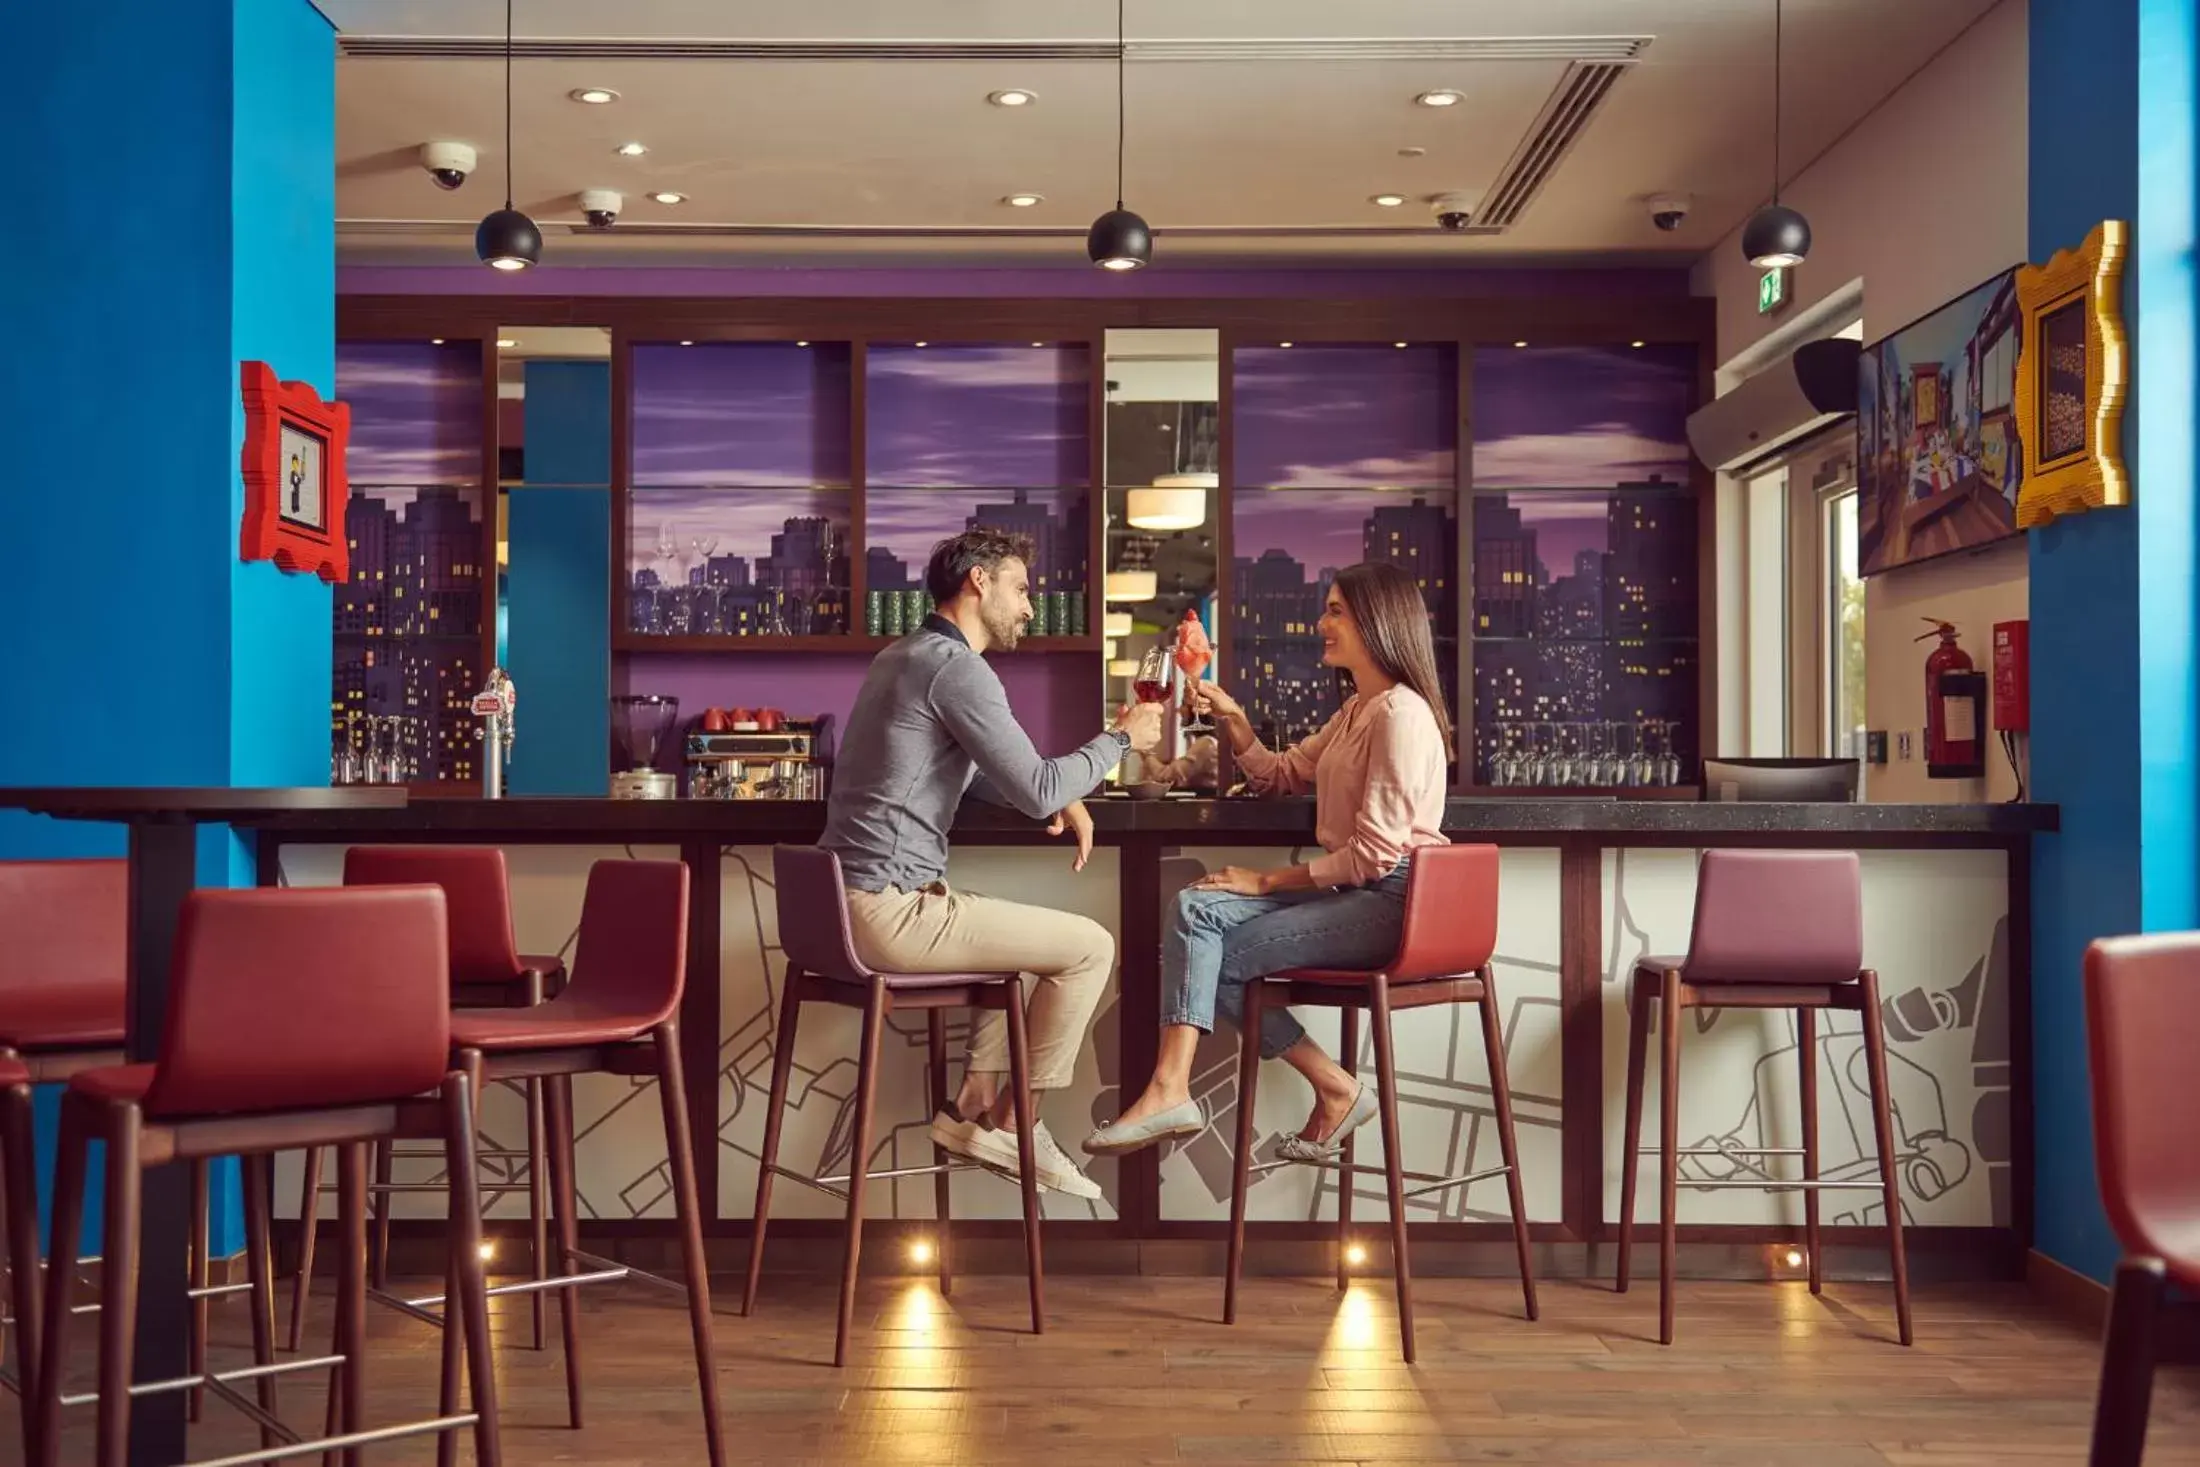 Restaurant/places to eat in LEGOLAND Hotel Dubai